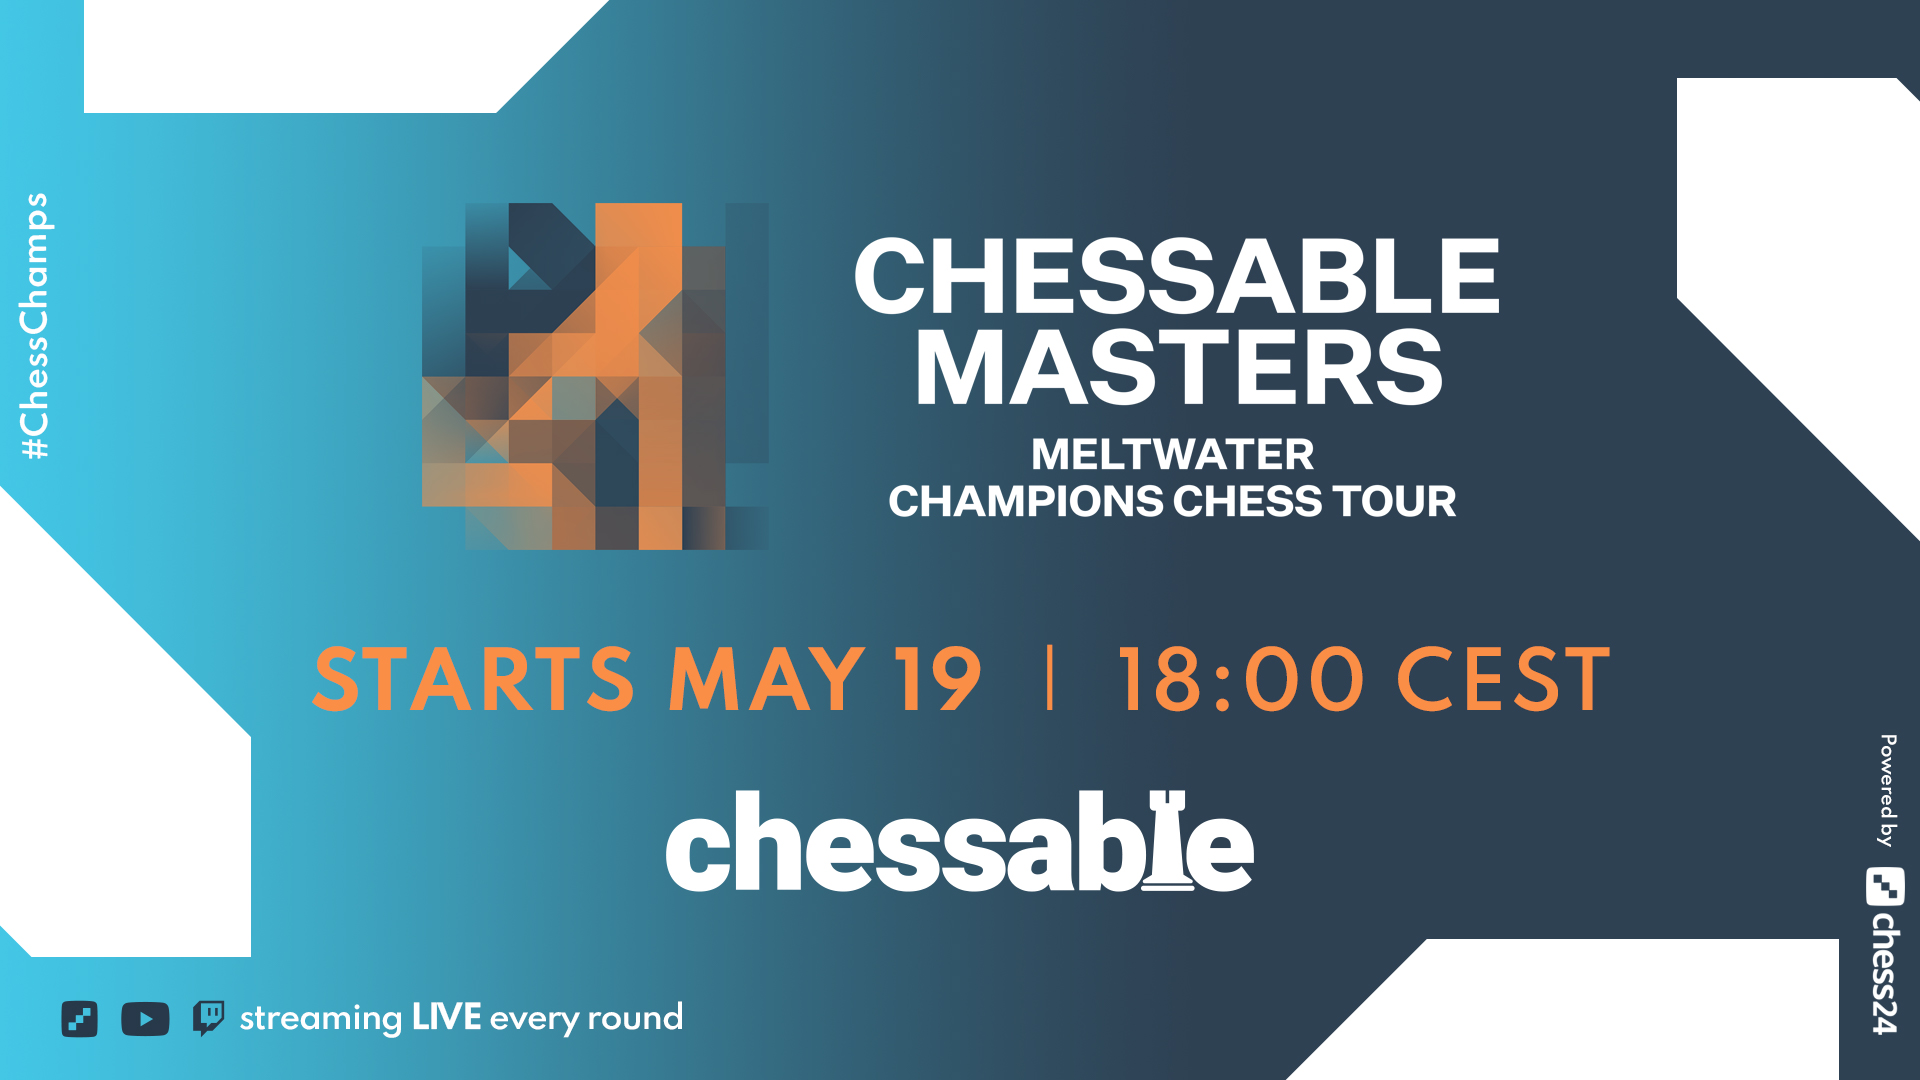 Die 2 besten Schachstars der Welt treffen beim Chessable Masters, das am 19